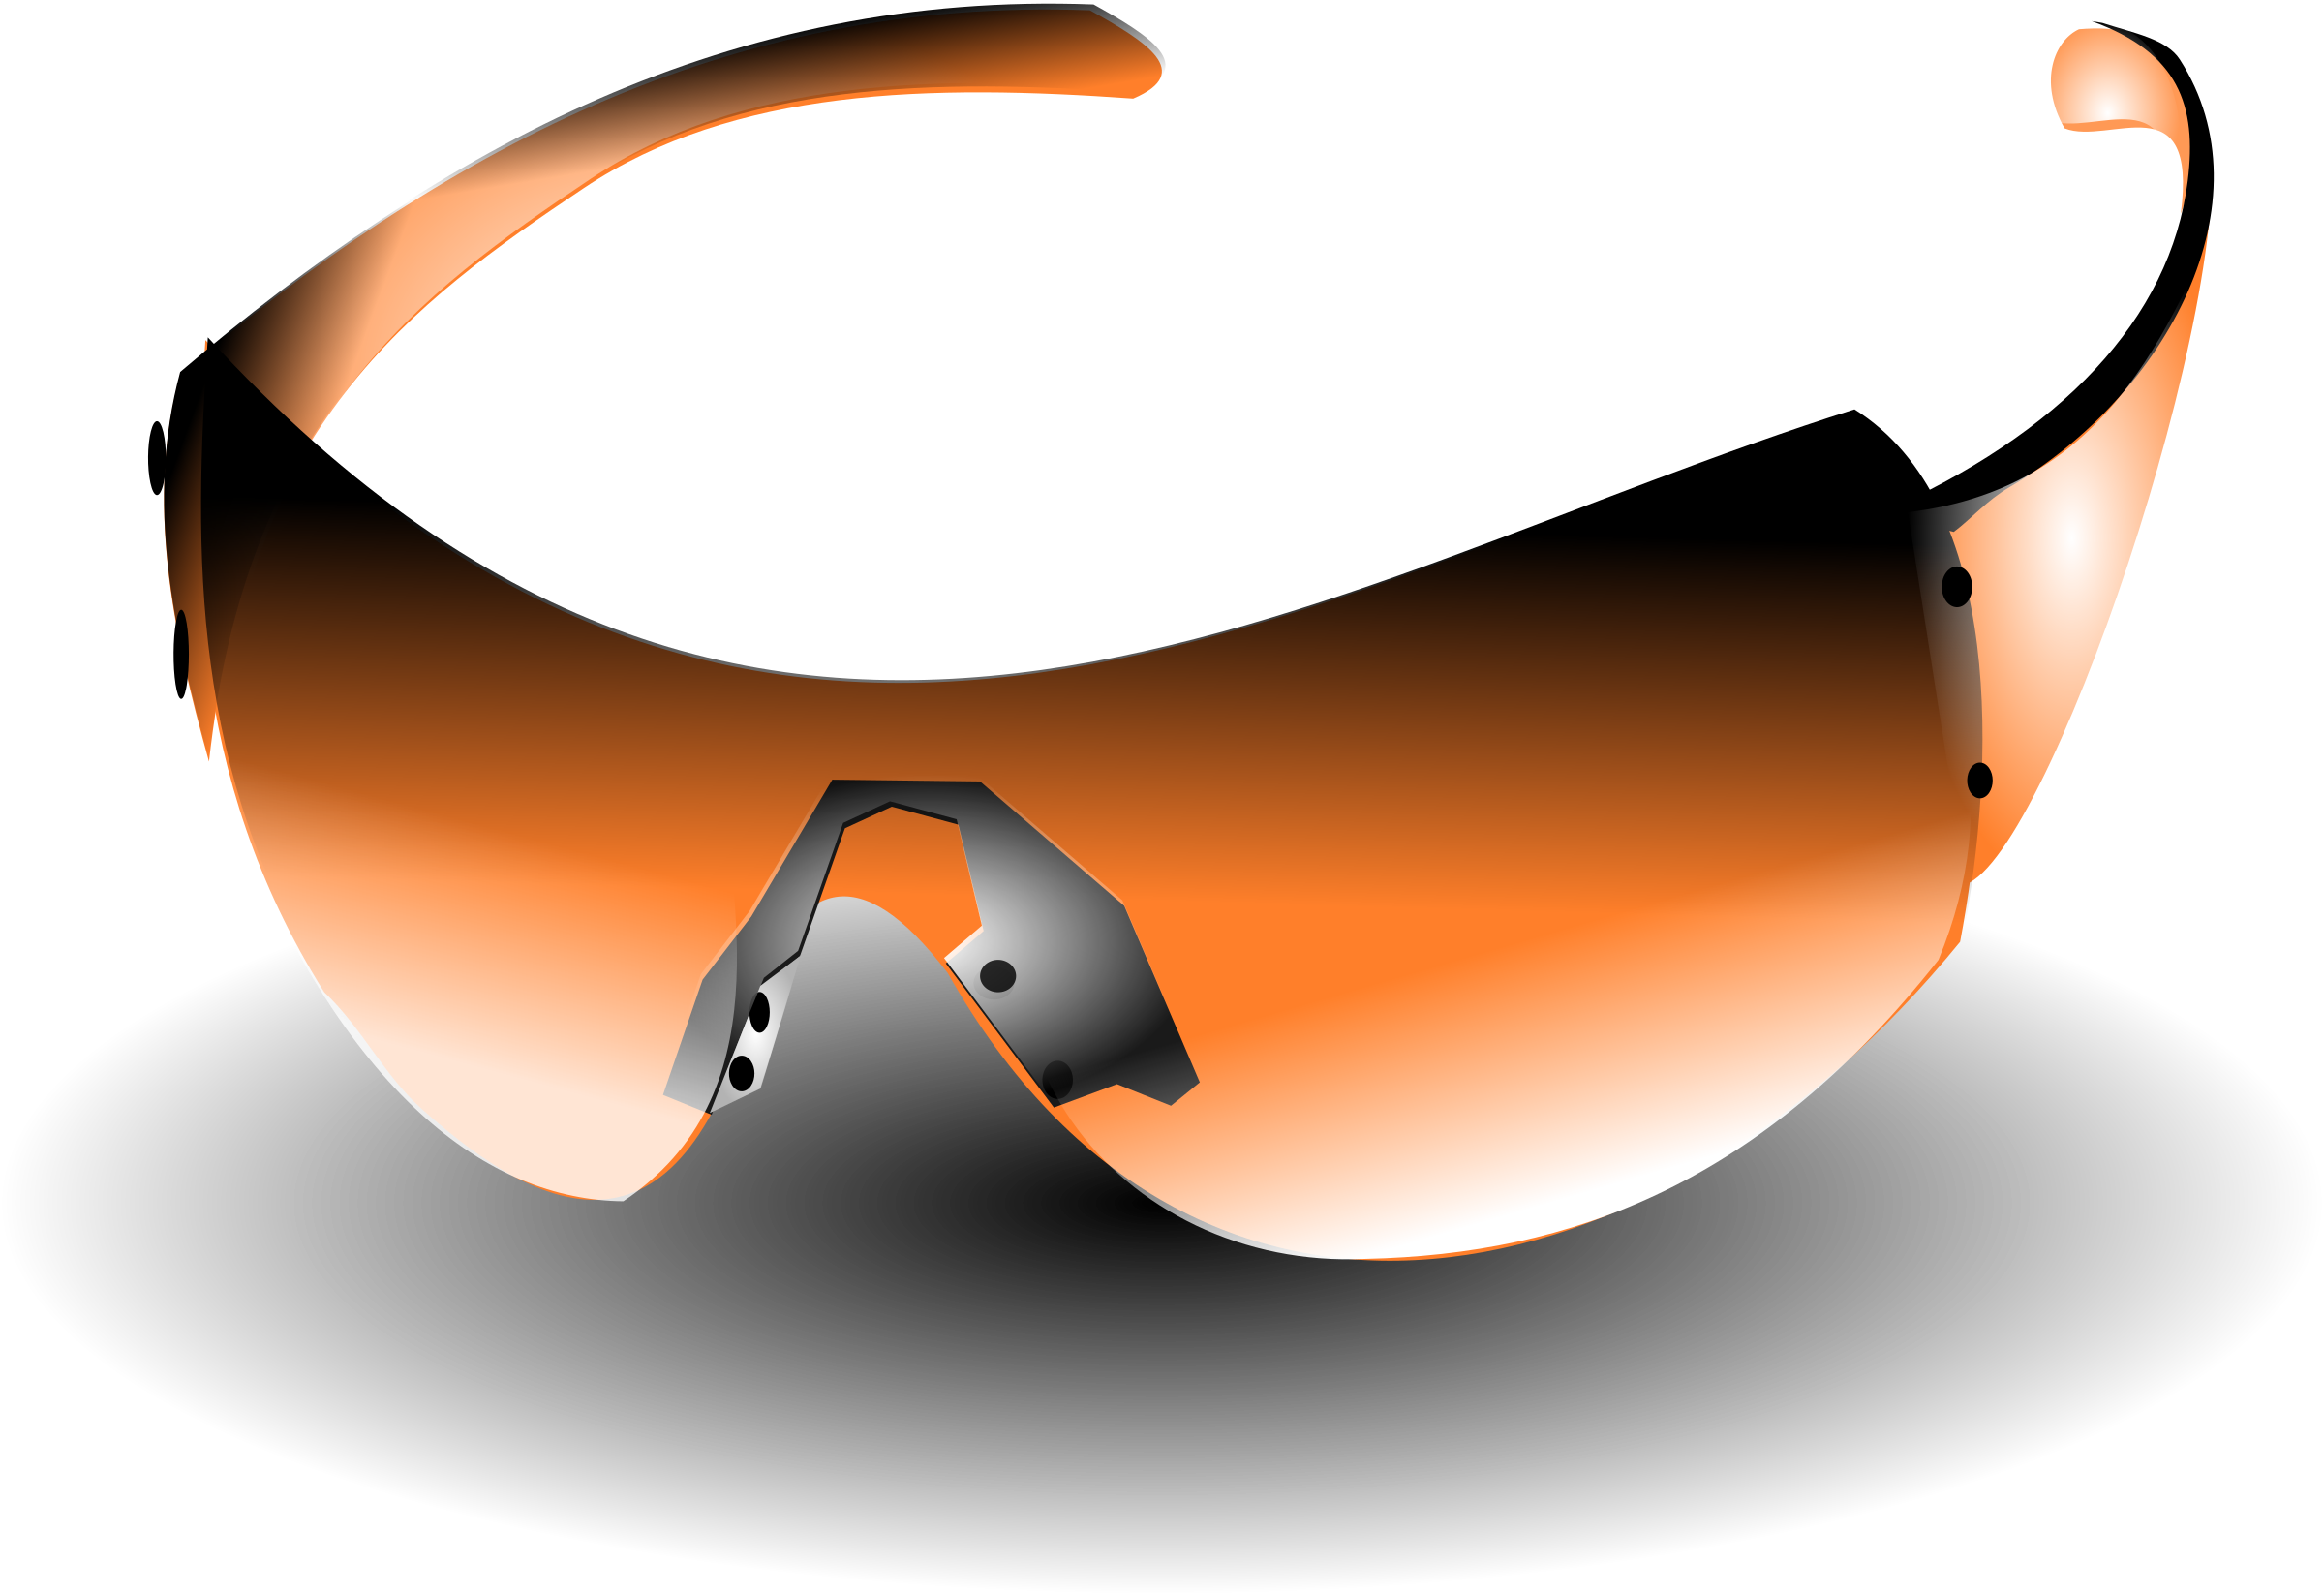 sunglasses clipart orange